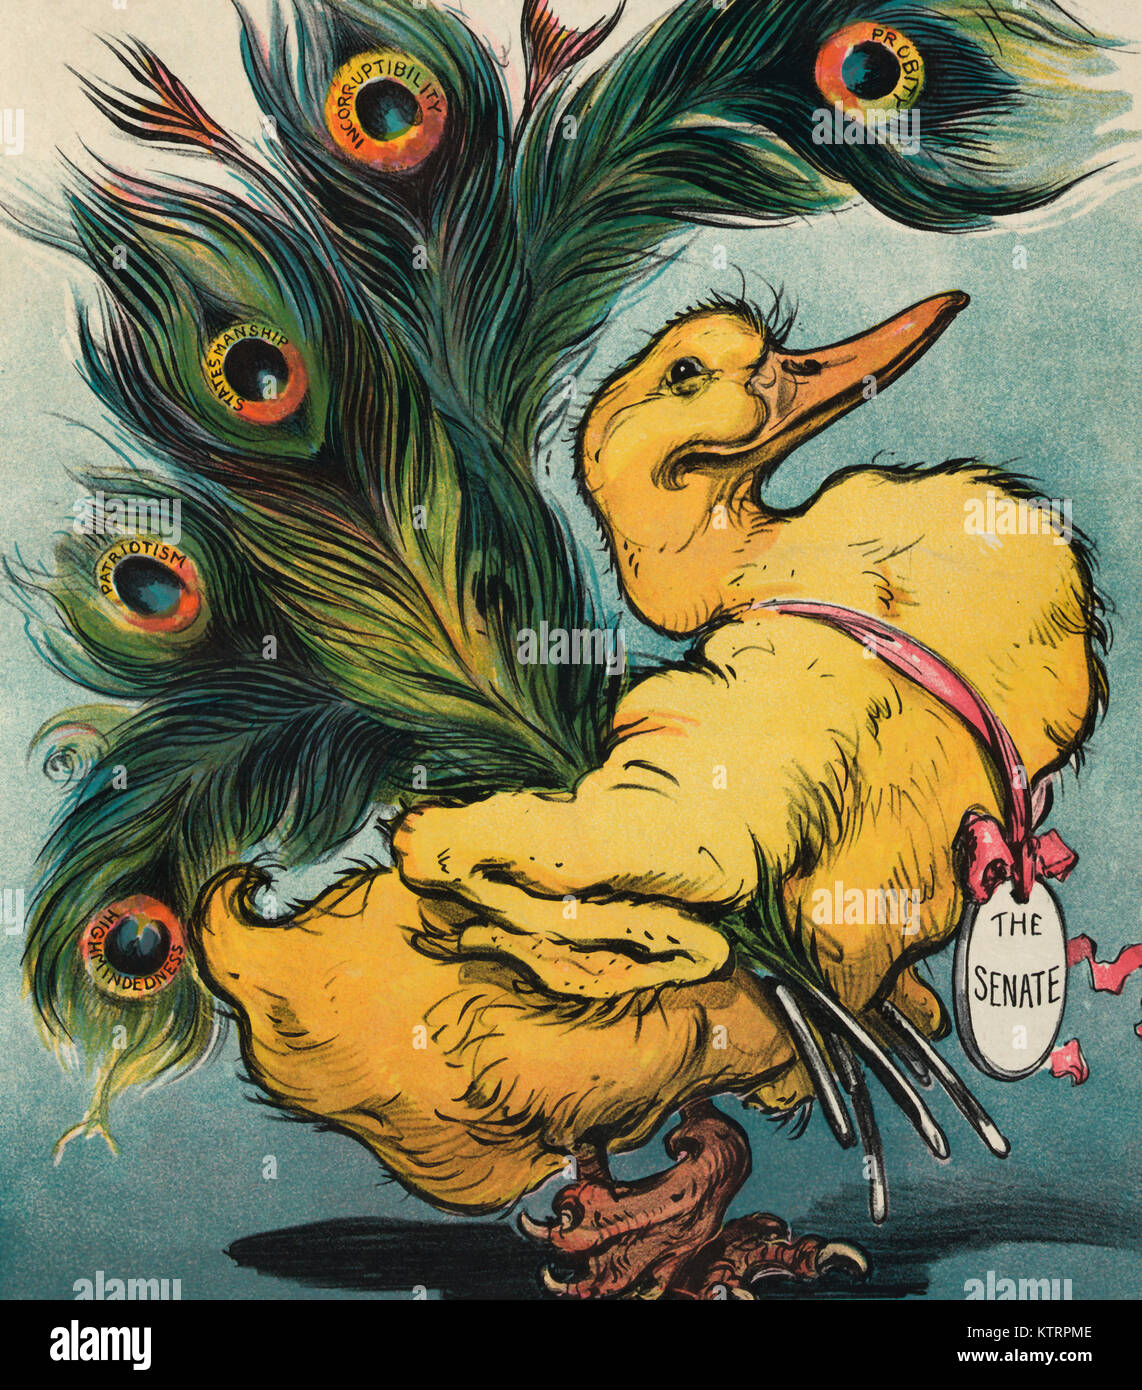 Das hässliche Entlein - Abbildung zeigt eine Ente mit Krallen - Fuß, eine Medaille mit der Aufschrift "Der Senat" tragen, mit pfauenfedern "Ehrlichkeit, Unbestechlichkeit, Staatskunst, Patriotismus, und Highmindedness' beschriftet. Die politische Karikatur, 1906 Stockfoto